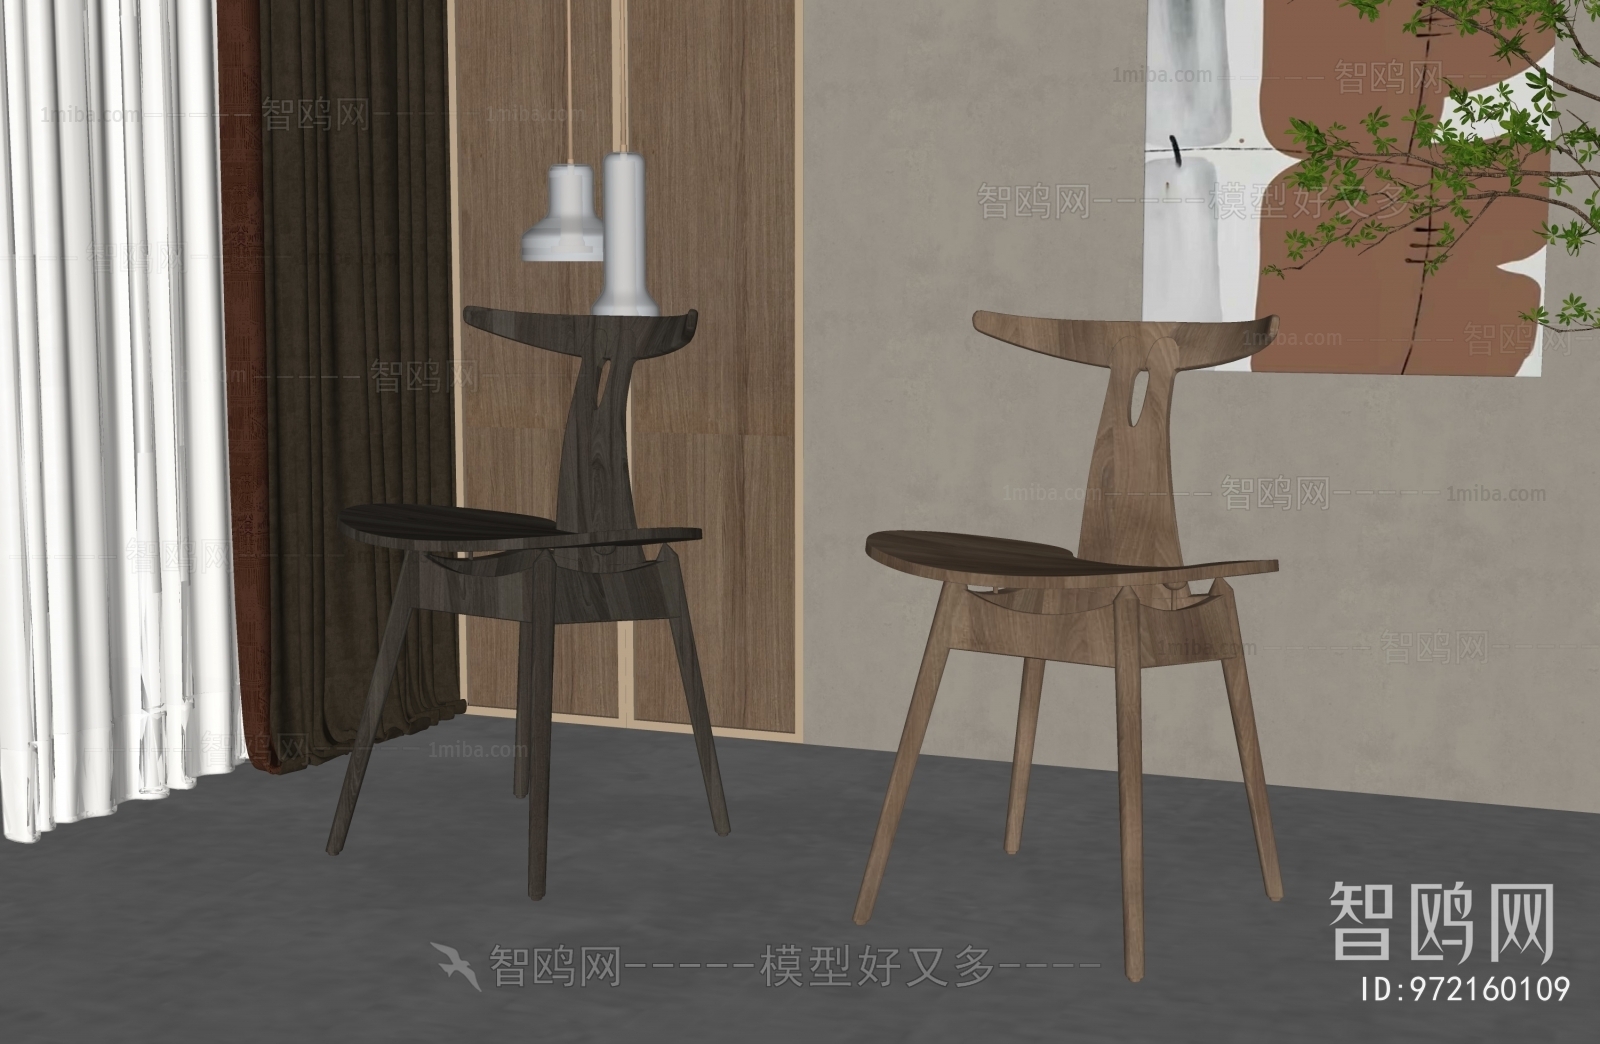 Wabi-sabi Style Single Chair